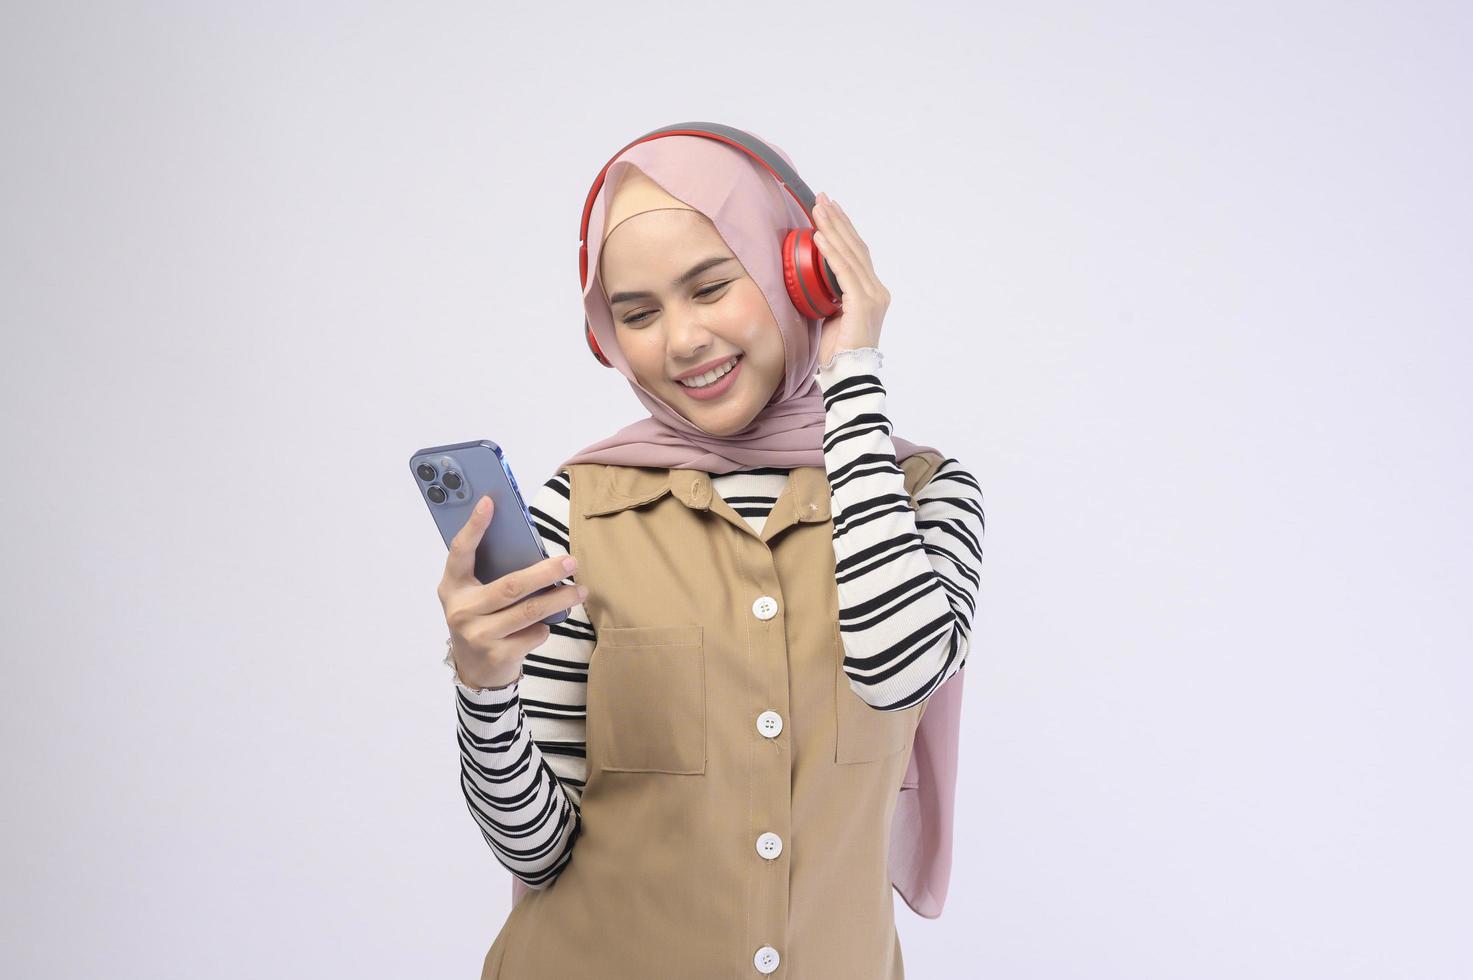 jonge mooie moslimvrouw die hoofdtelefoon op witte achtergrond draagt foto